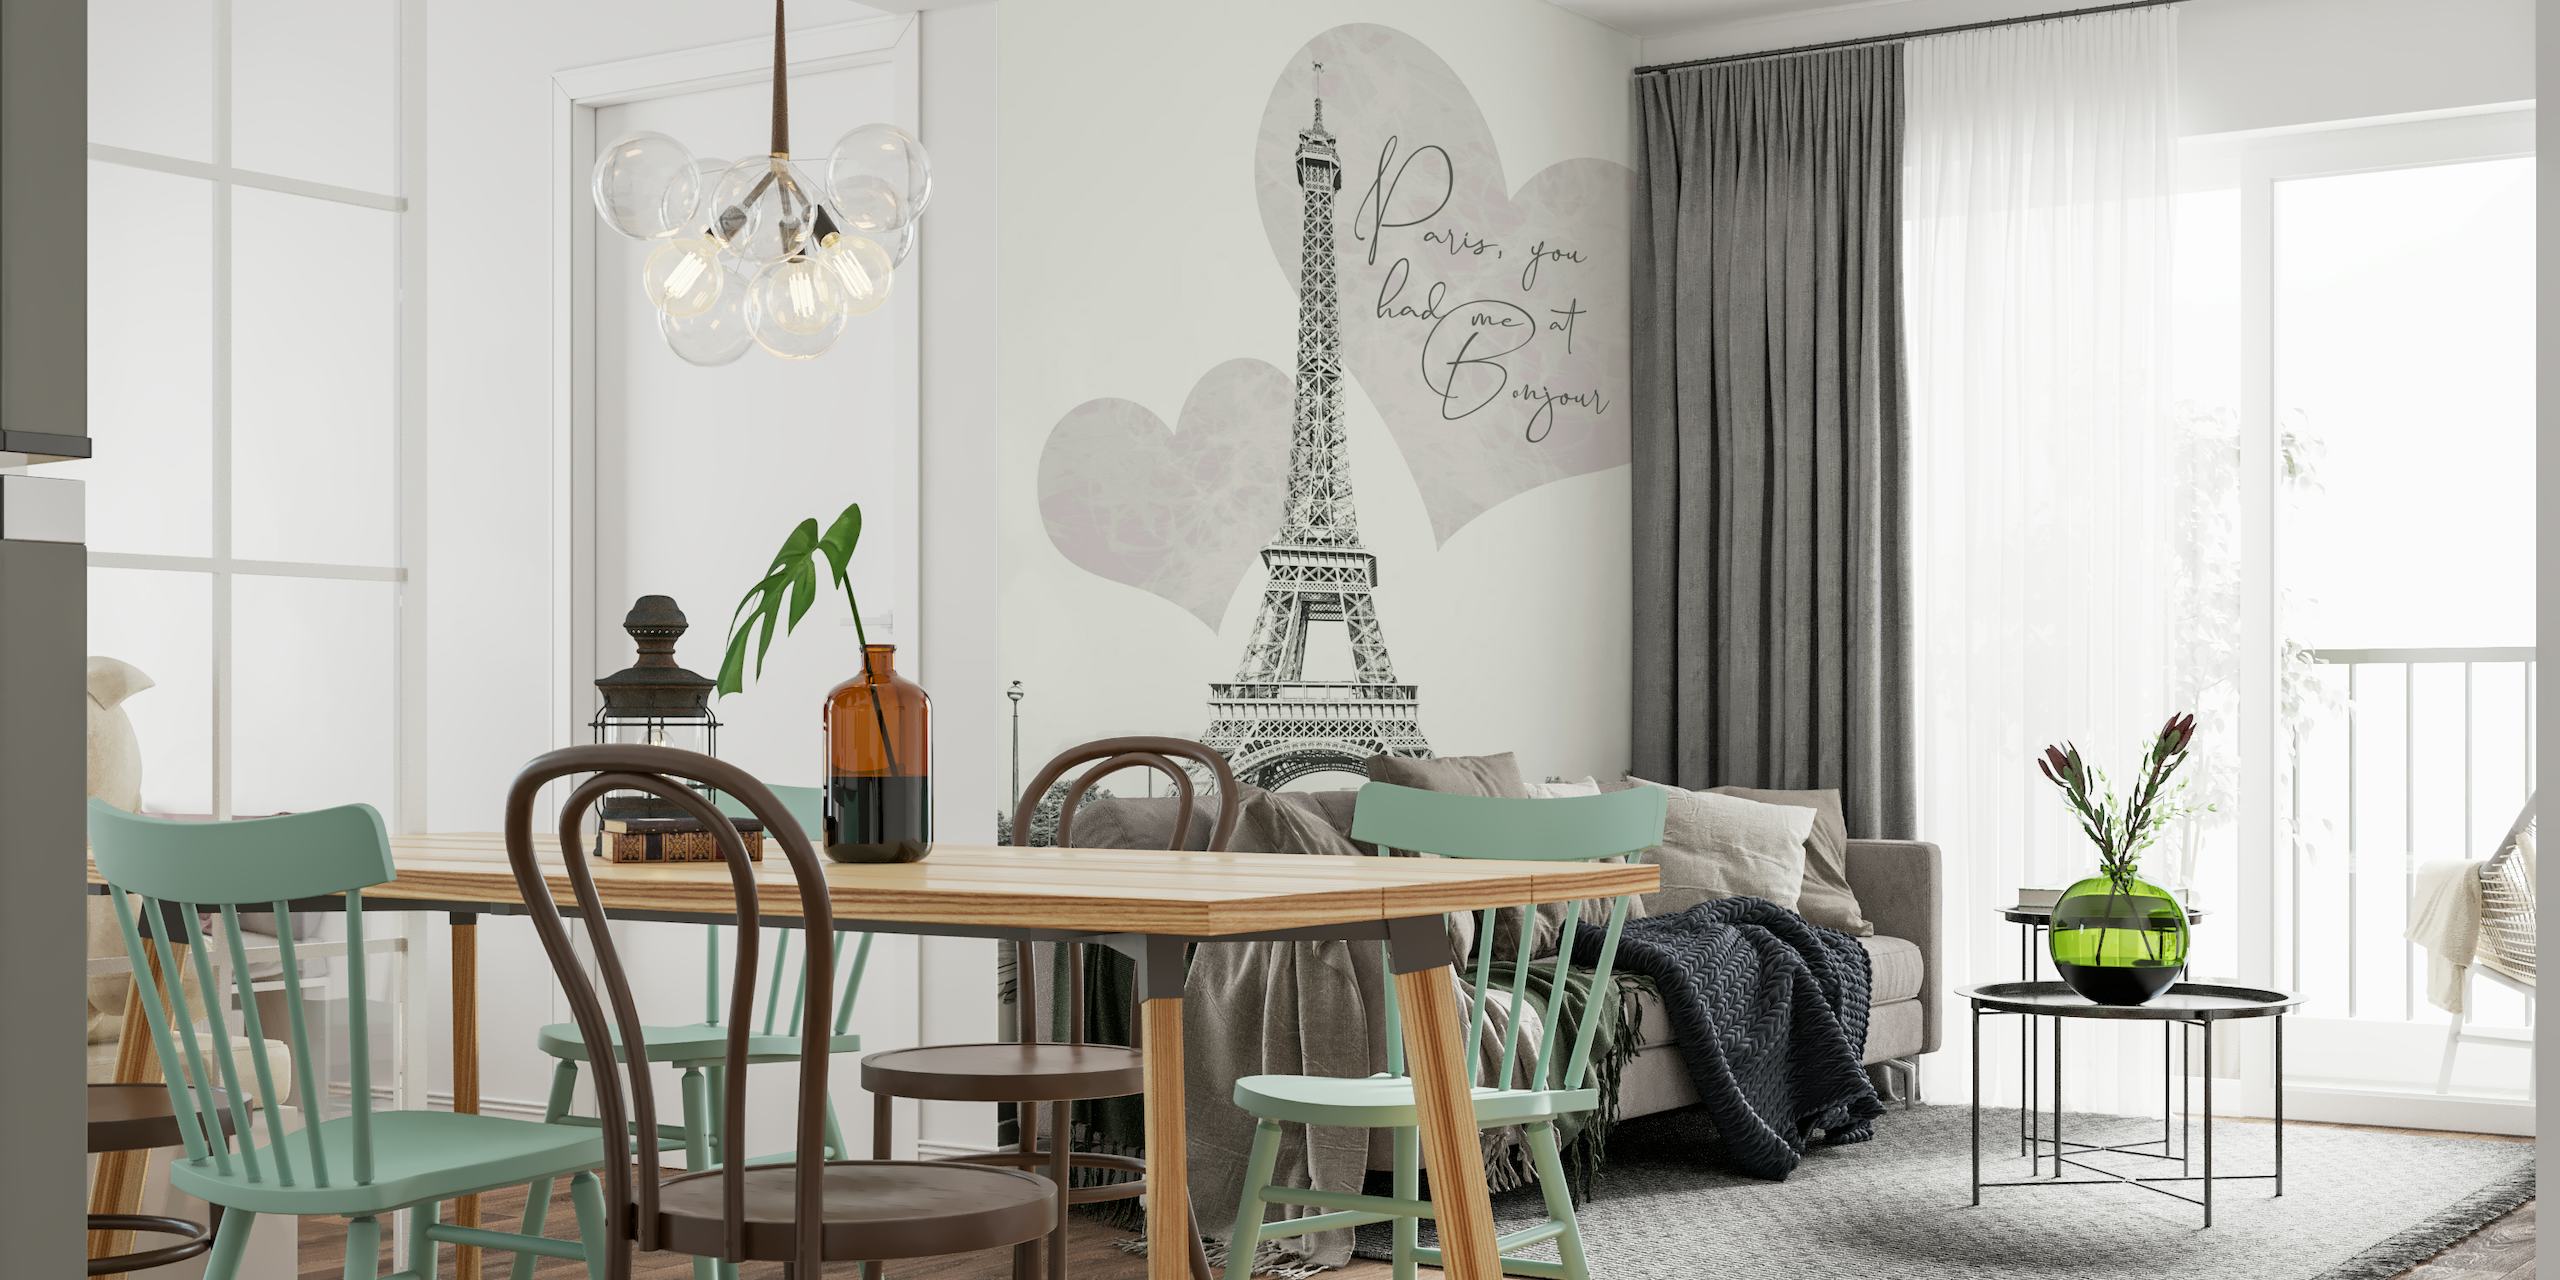 Eiffel-torni, jossa on romanttisia sydämen muotoja ja "Pariisi, sinulla oli minut BONJOURissa" -lainausseinämaalaus